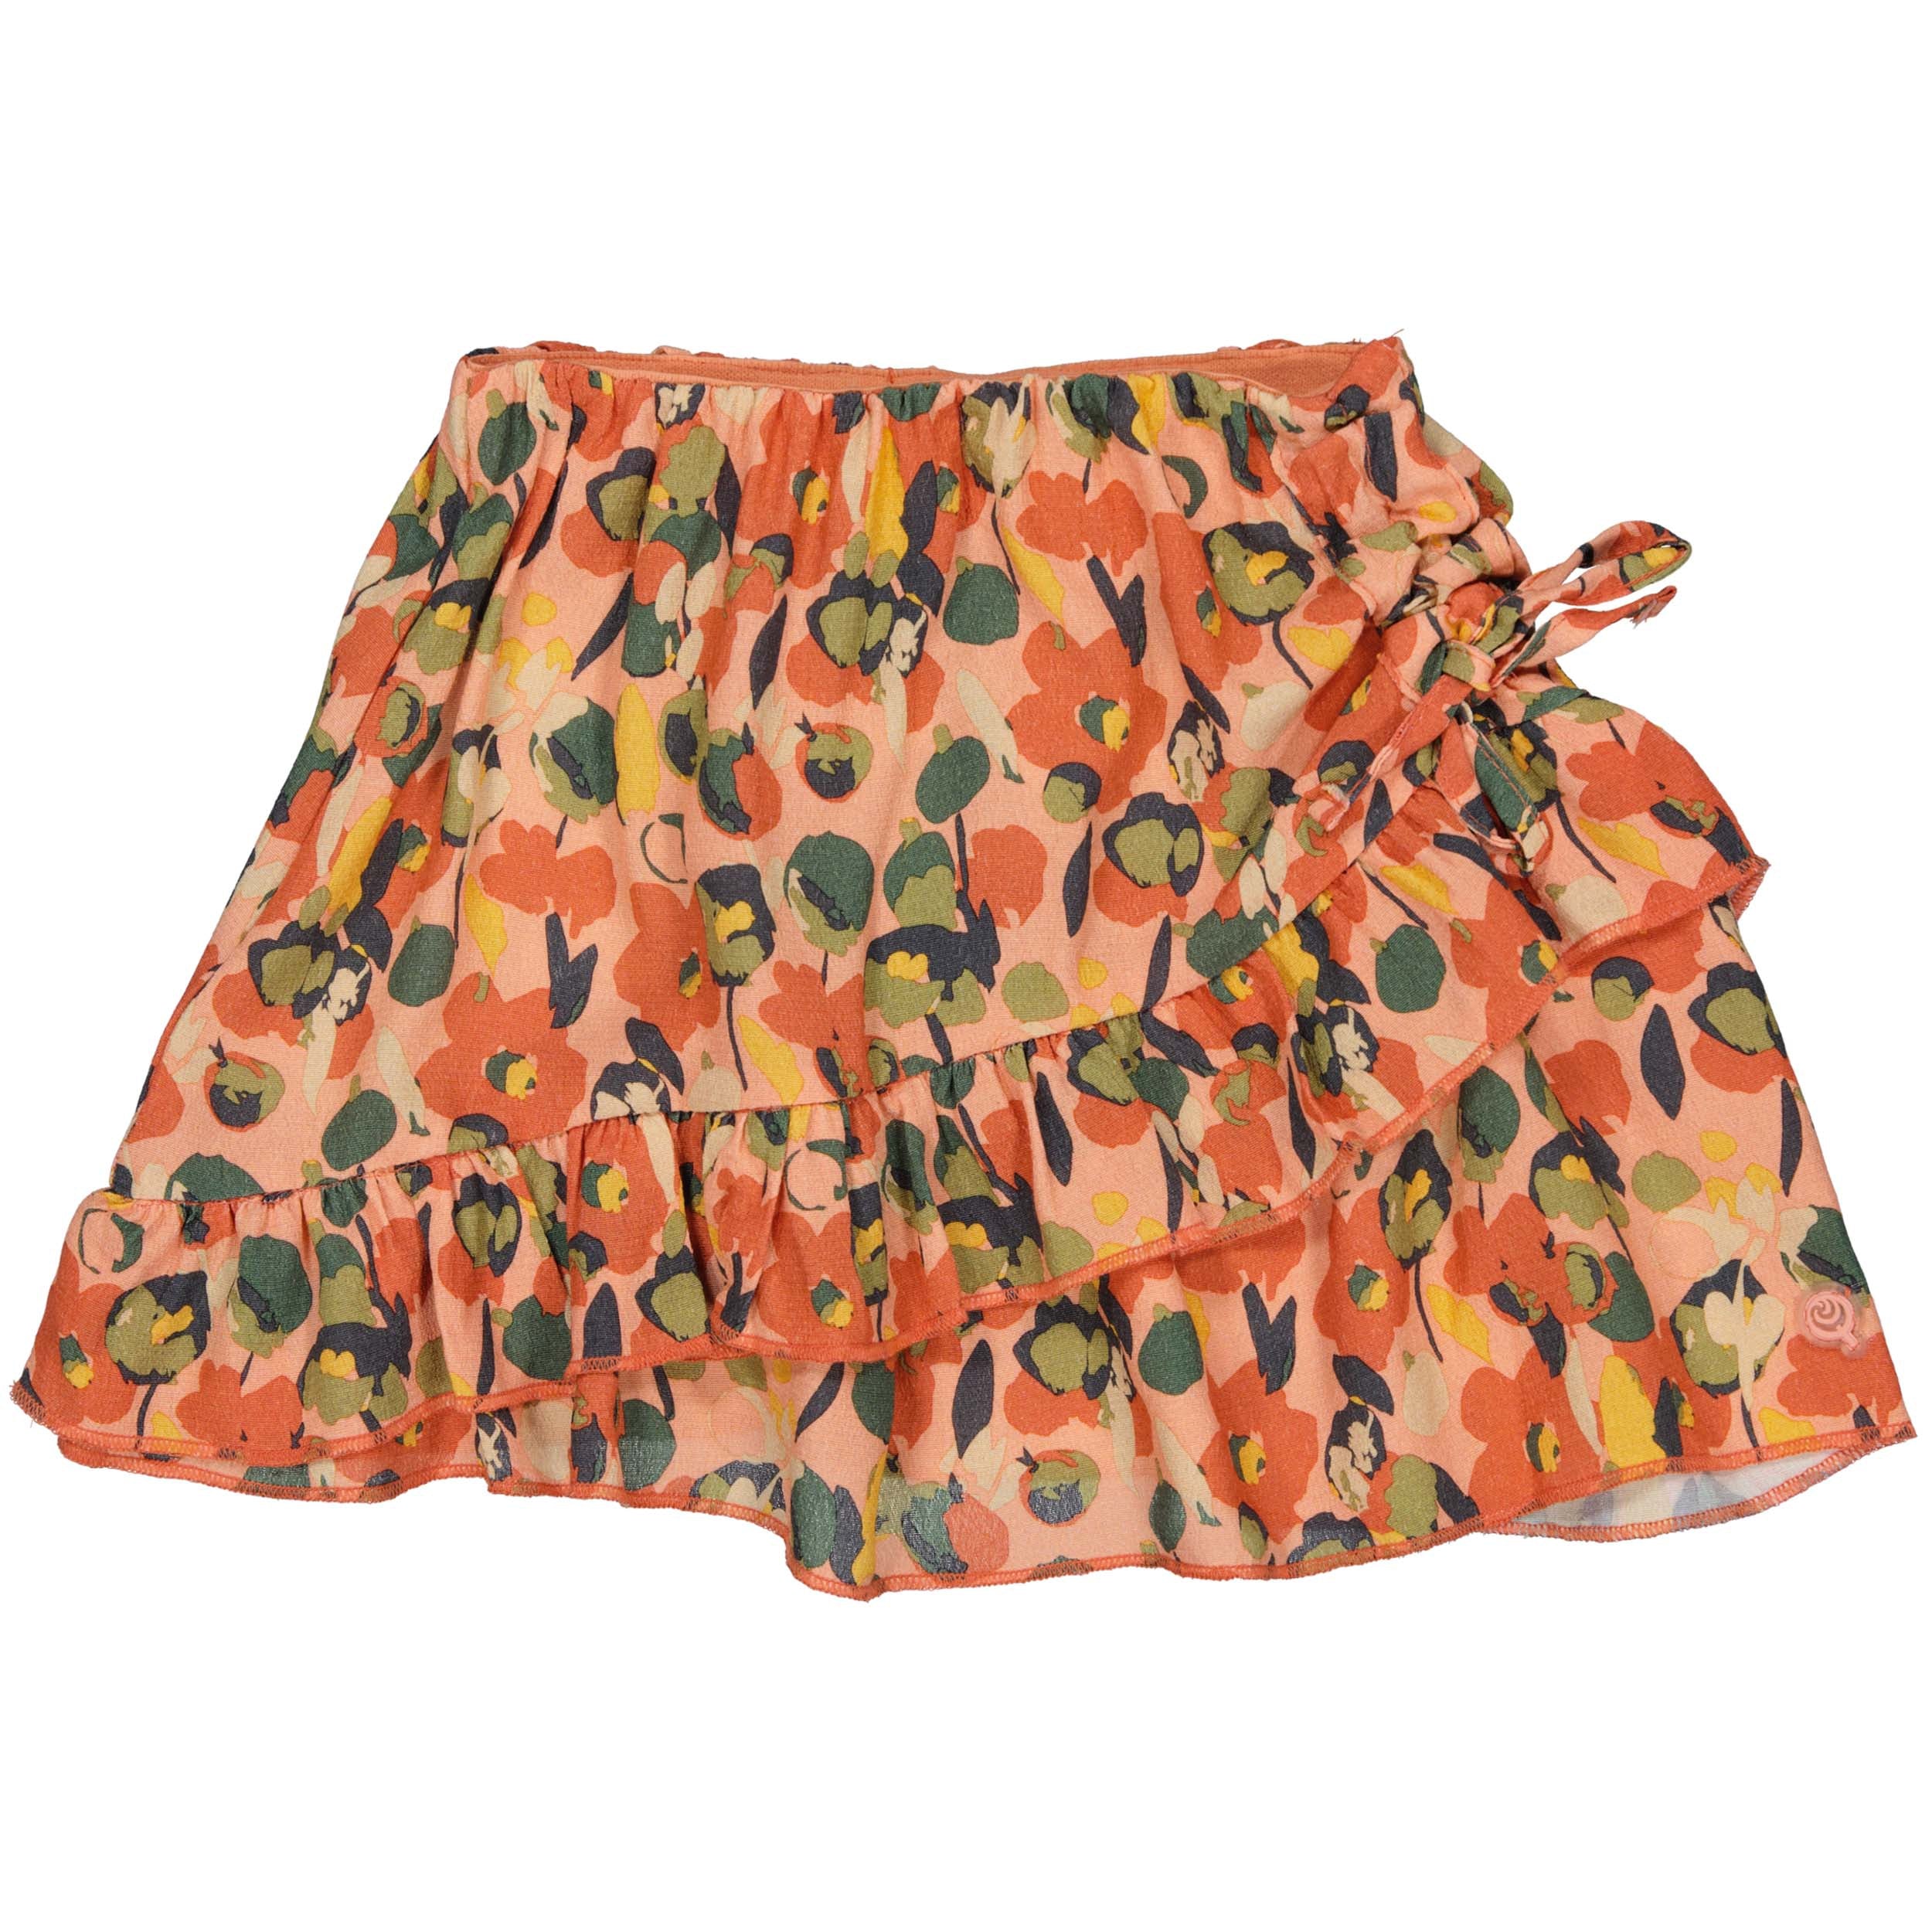 Meisjes Skirt BEVERLYQS241 van Quapi in de kleur AOP Pink Graphic in maat 122-128.